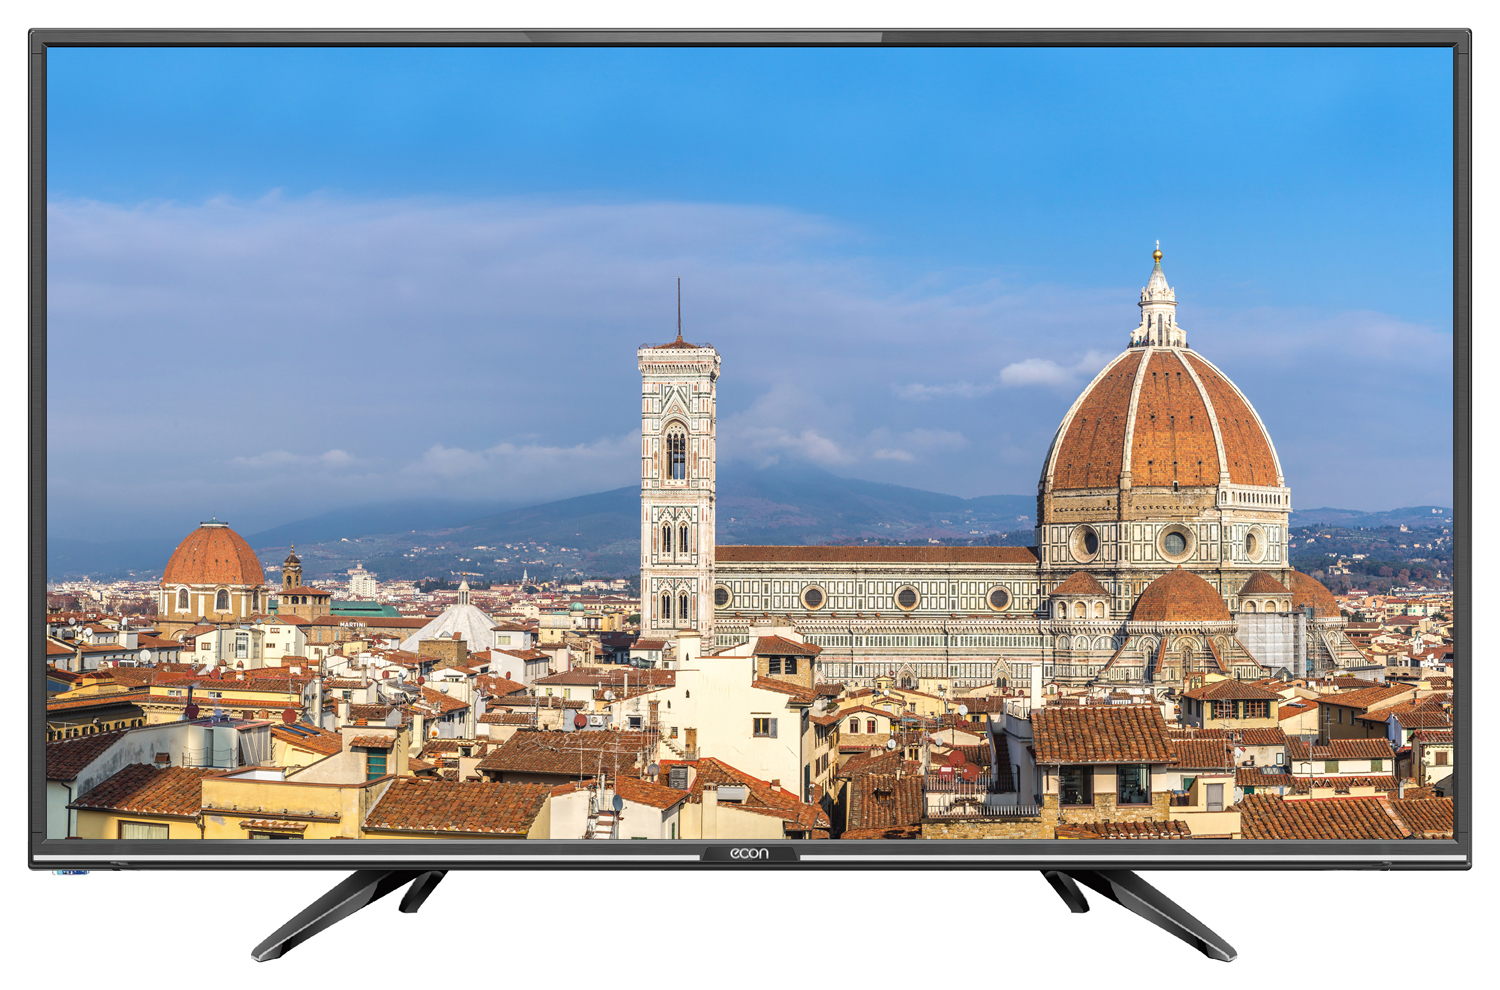 Картинка Smart телевизор ECON EX-32HS005B по разумной цене купить в интернет магазине mall.su